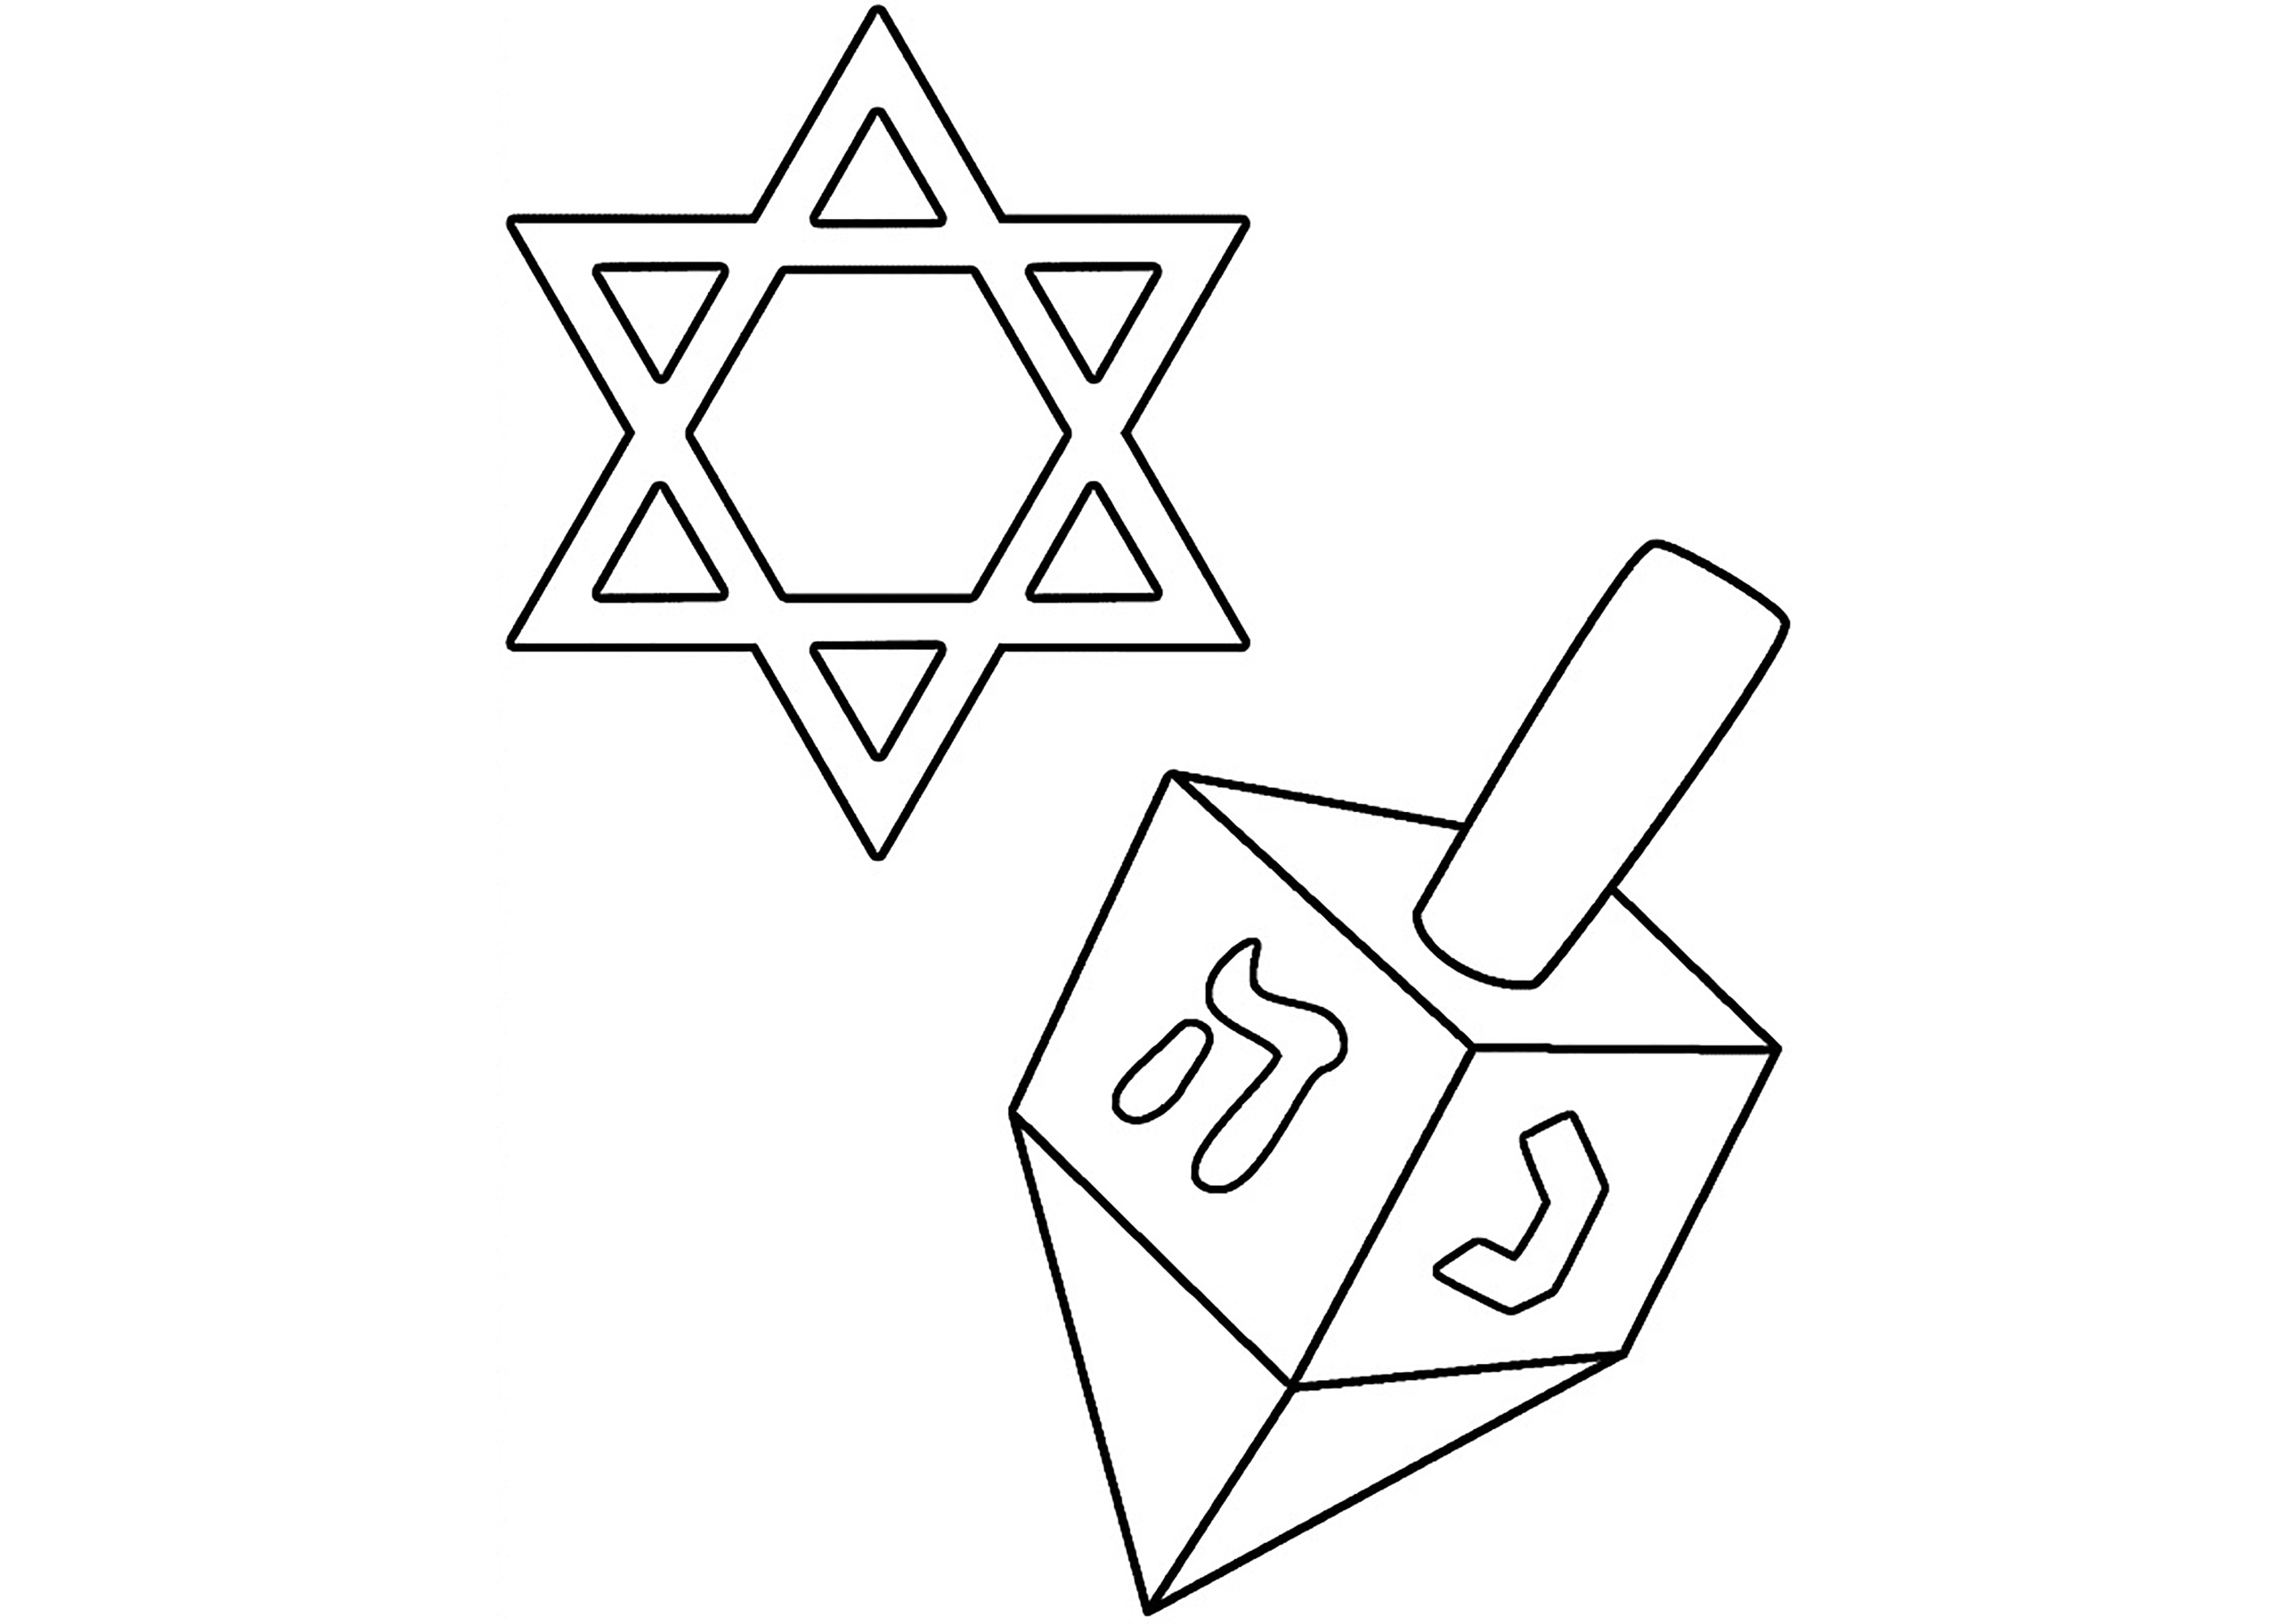 Trompo de Hanukkah y estrella de David. Dos símbolos del judaísmo